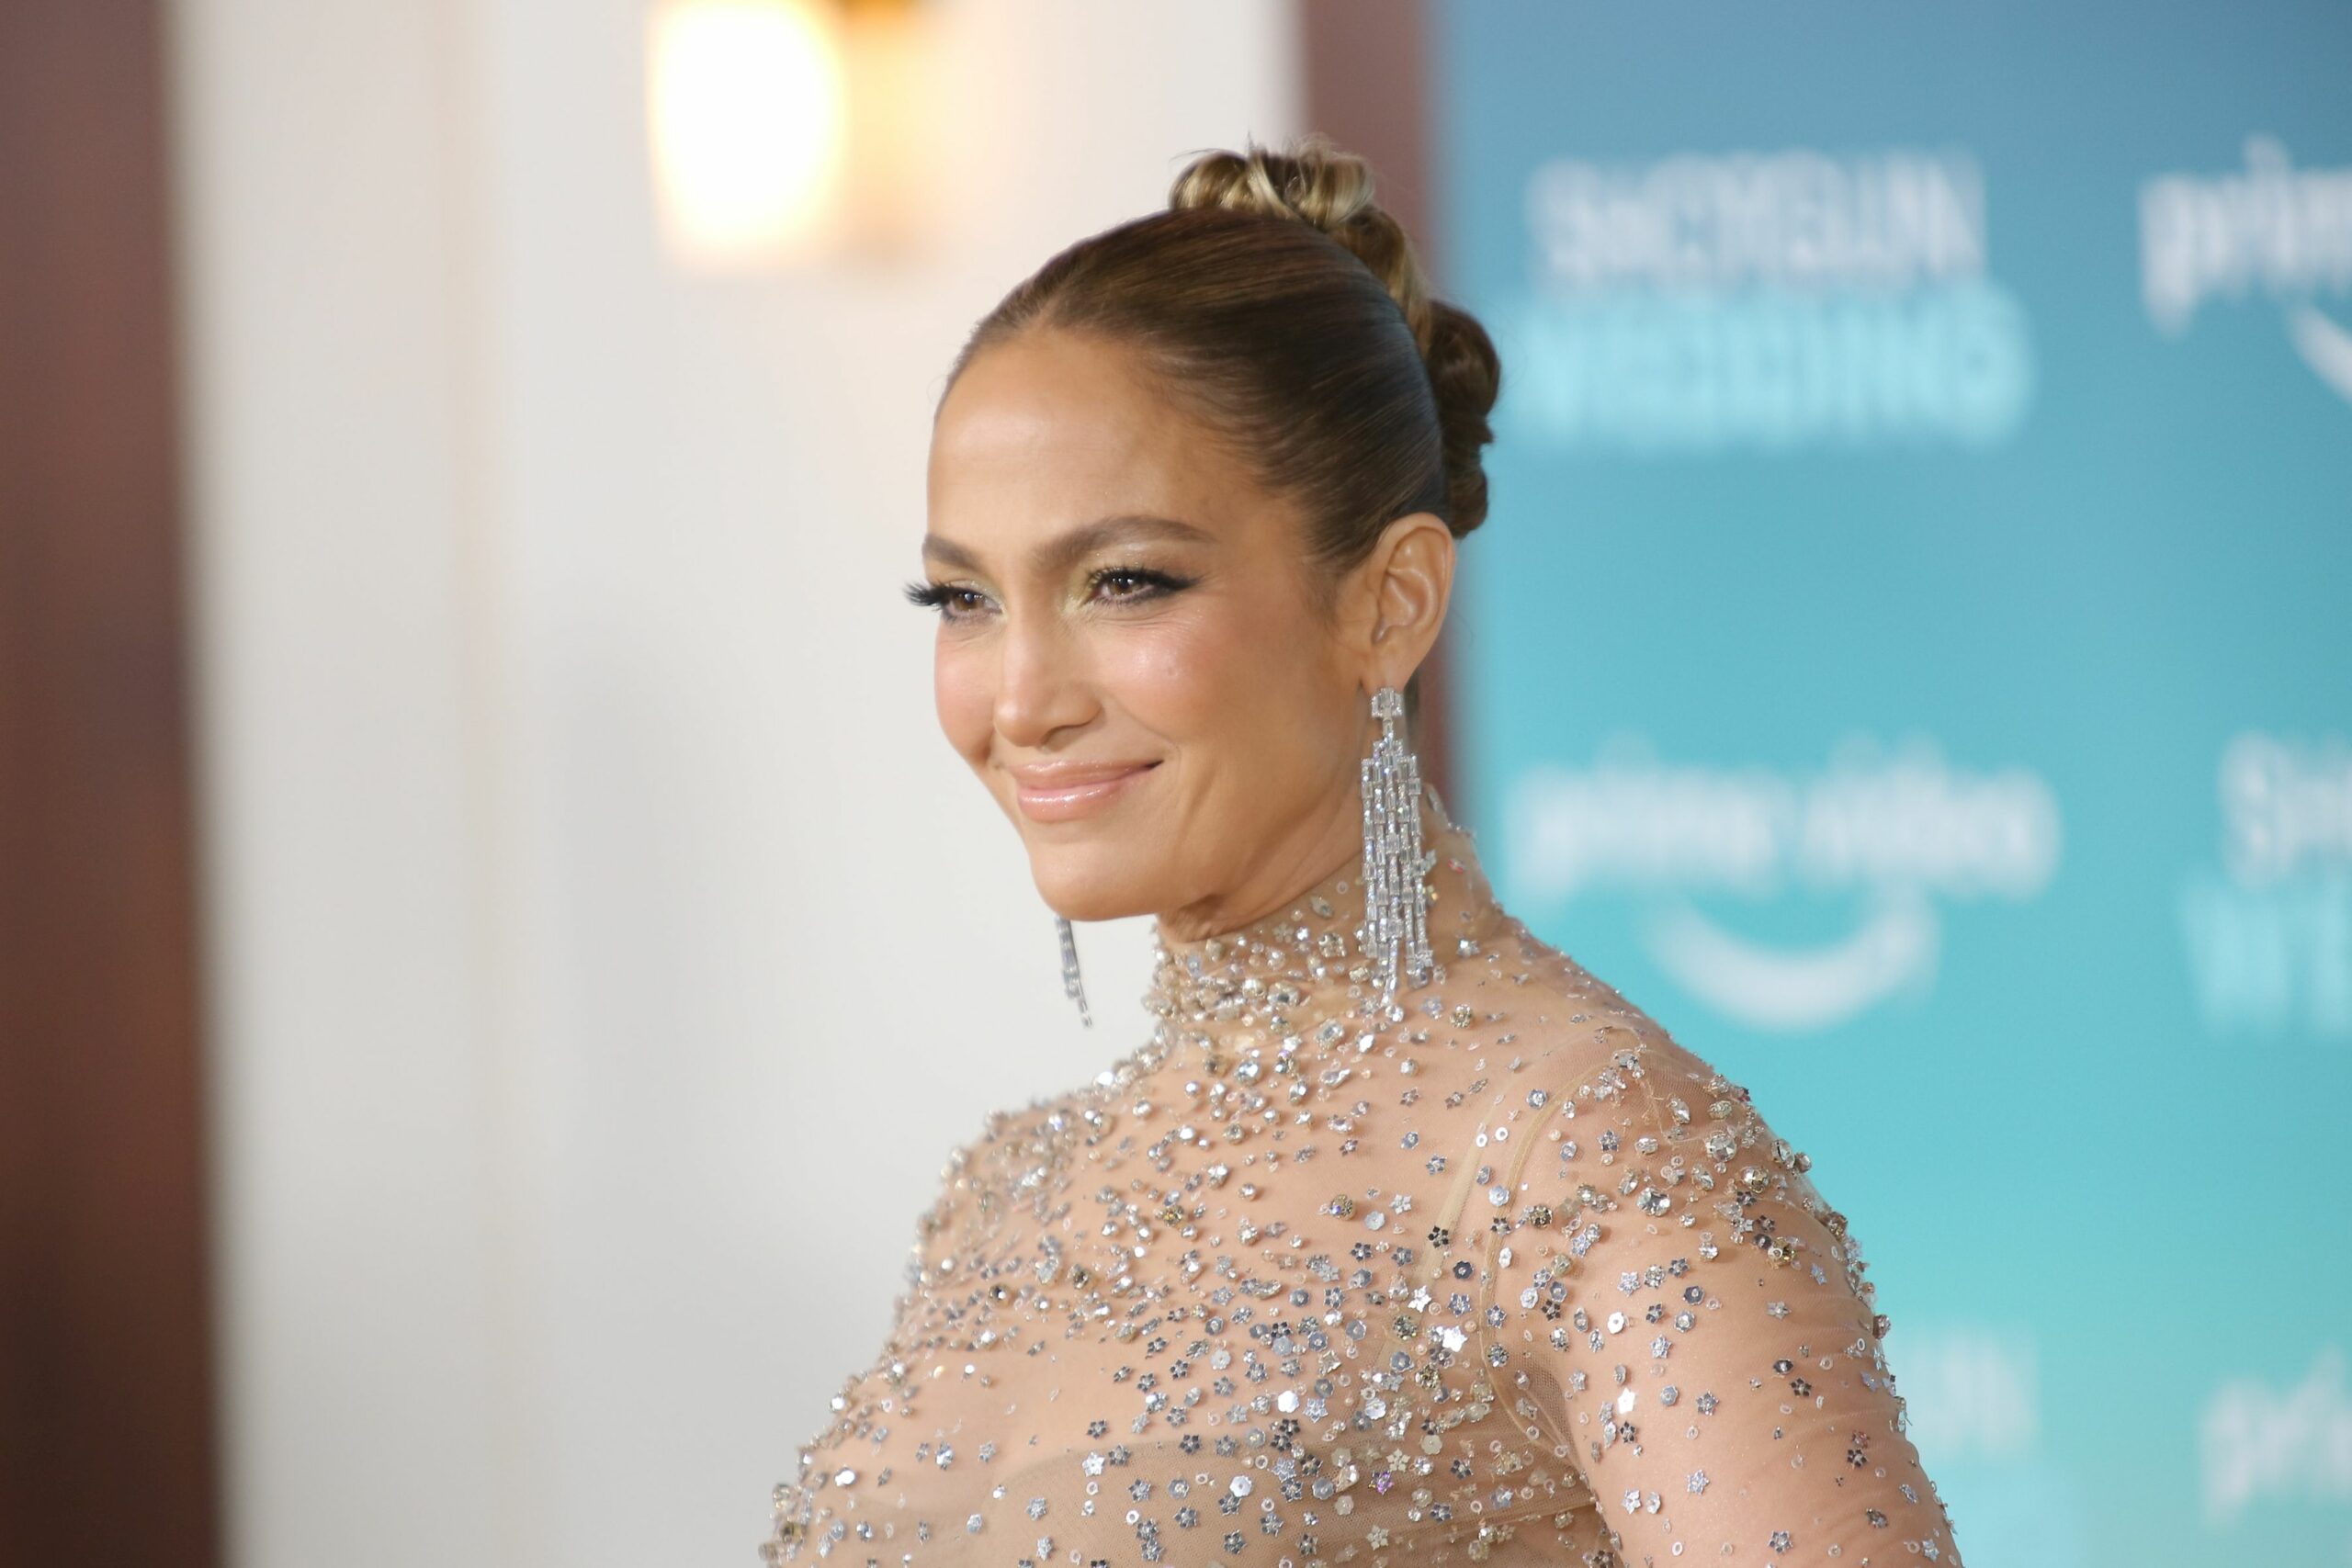 Jennifer Lopez a dat totul din casă. Cum este viața artistei de când s-a mutat cu Ben Affleck